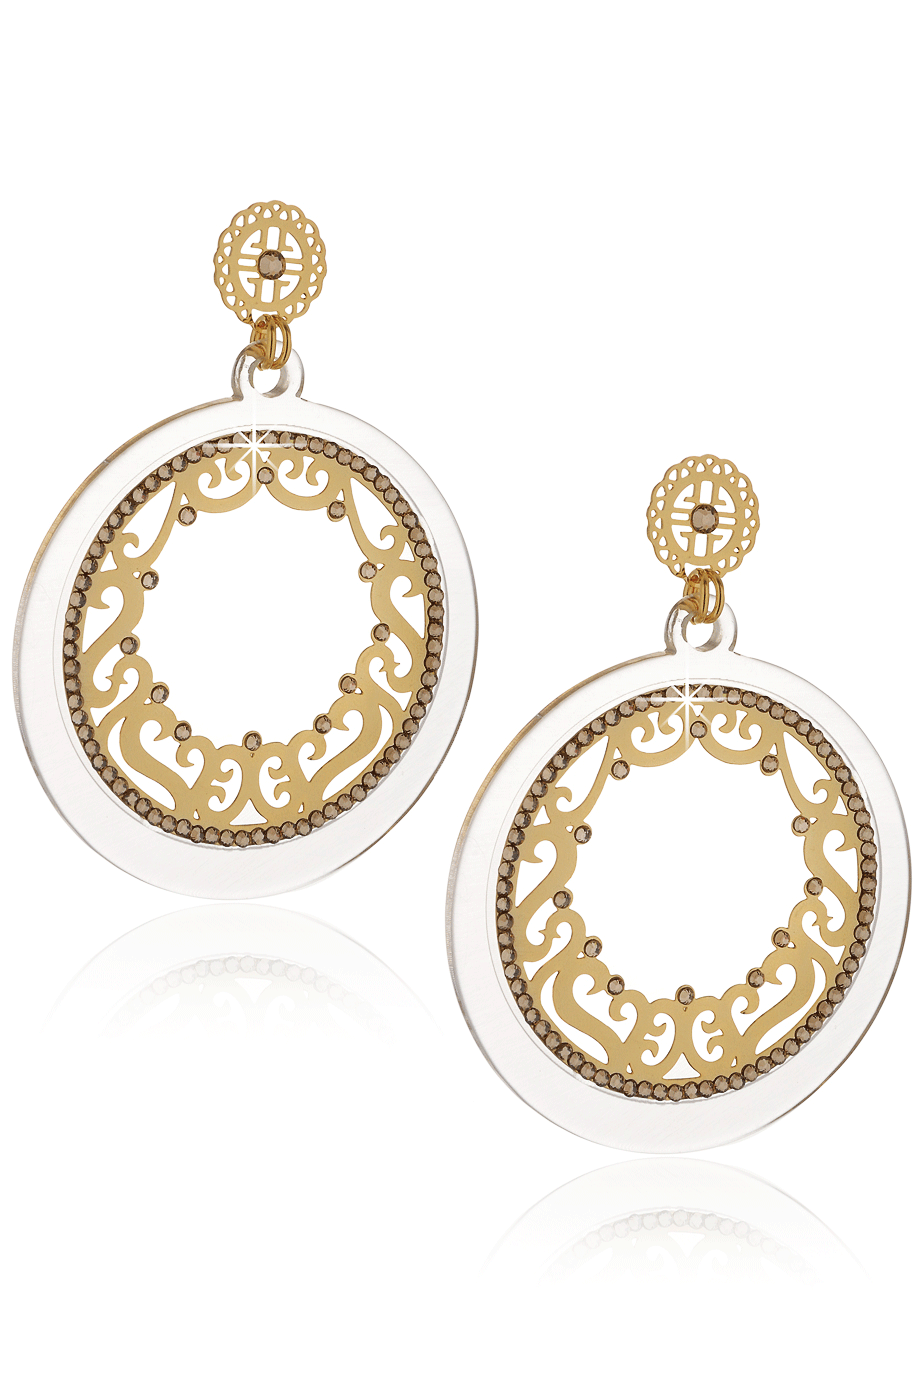 Χρυσά Σκουλαρίκια με Κρύσταλλα - Lk Designs | Κοσμήματα